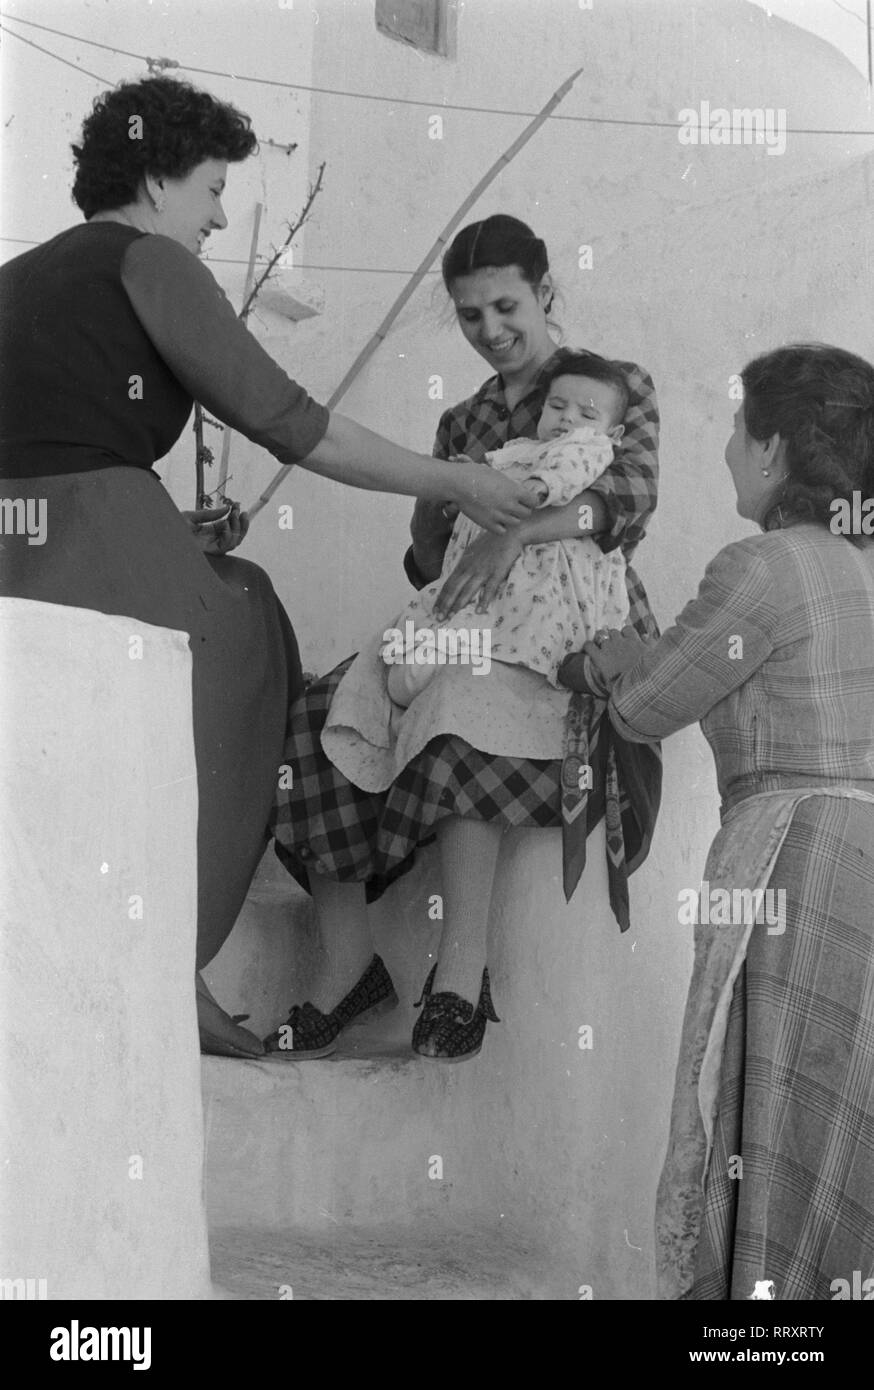 Italia - Italia negli anni cinquanta - le donne con Baby Bambino. Drei Frauen bemuttern ein Baby in Italien, 1950er Jahre. Foto Erich Andres Foto Stock